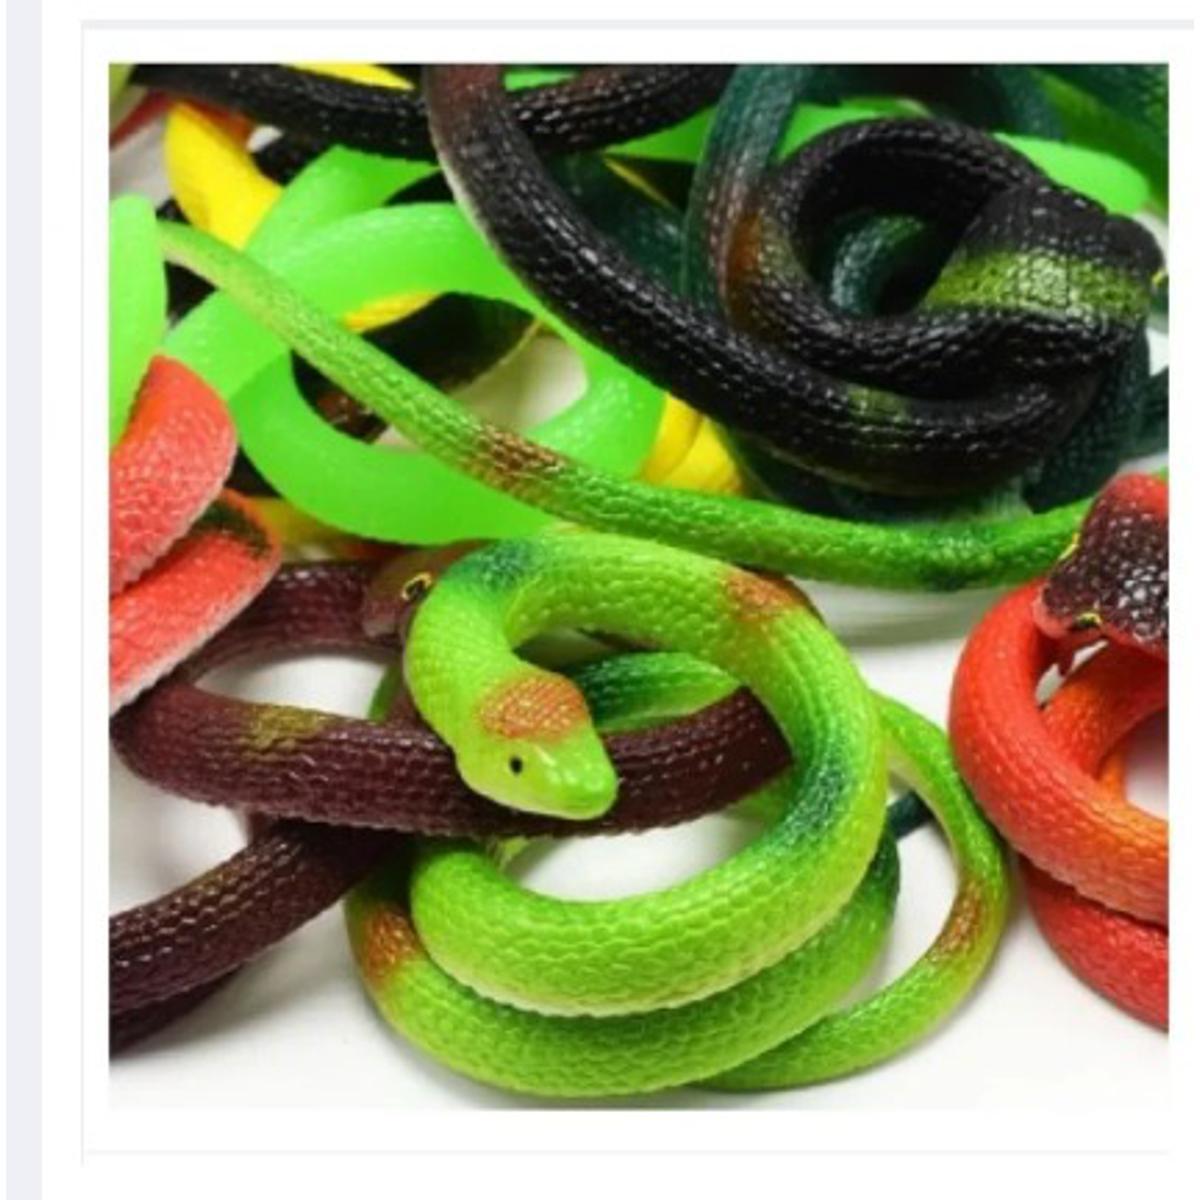 Snake/Rubber Snake Toy for Kids